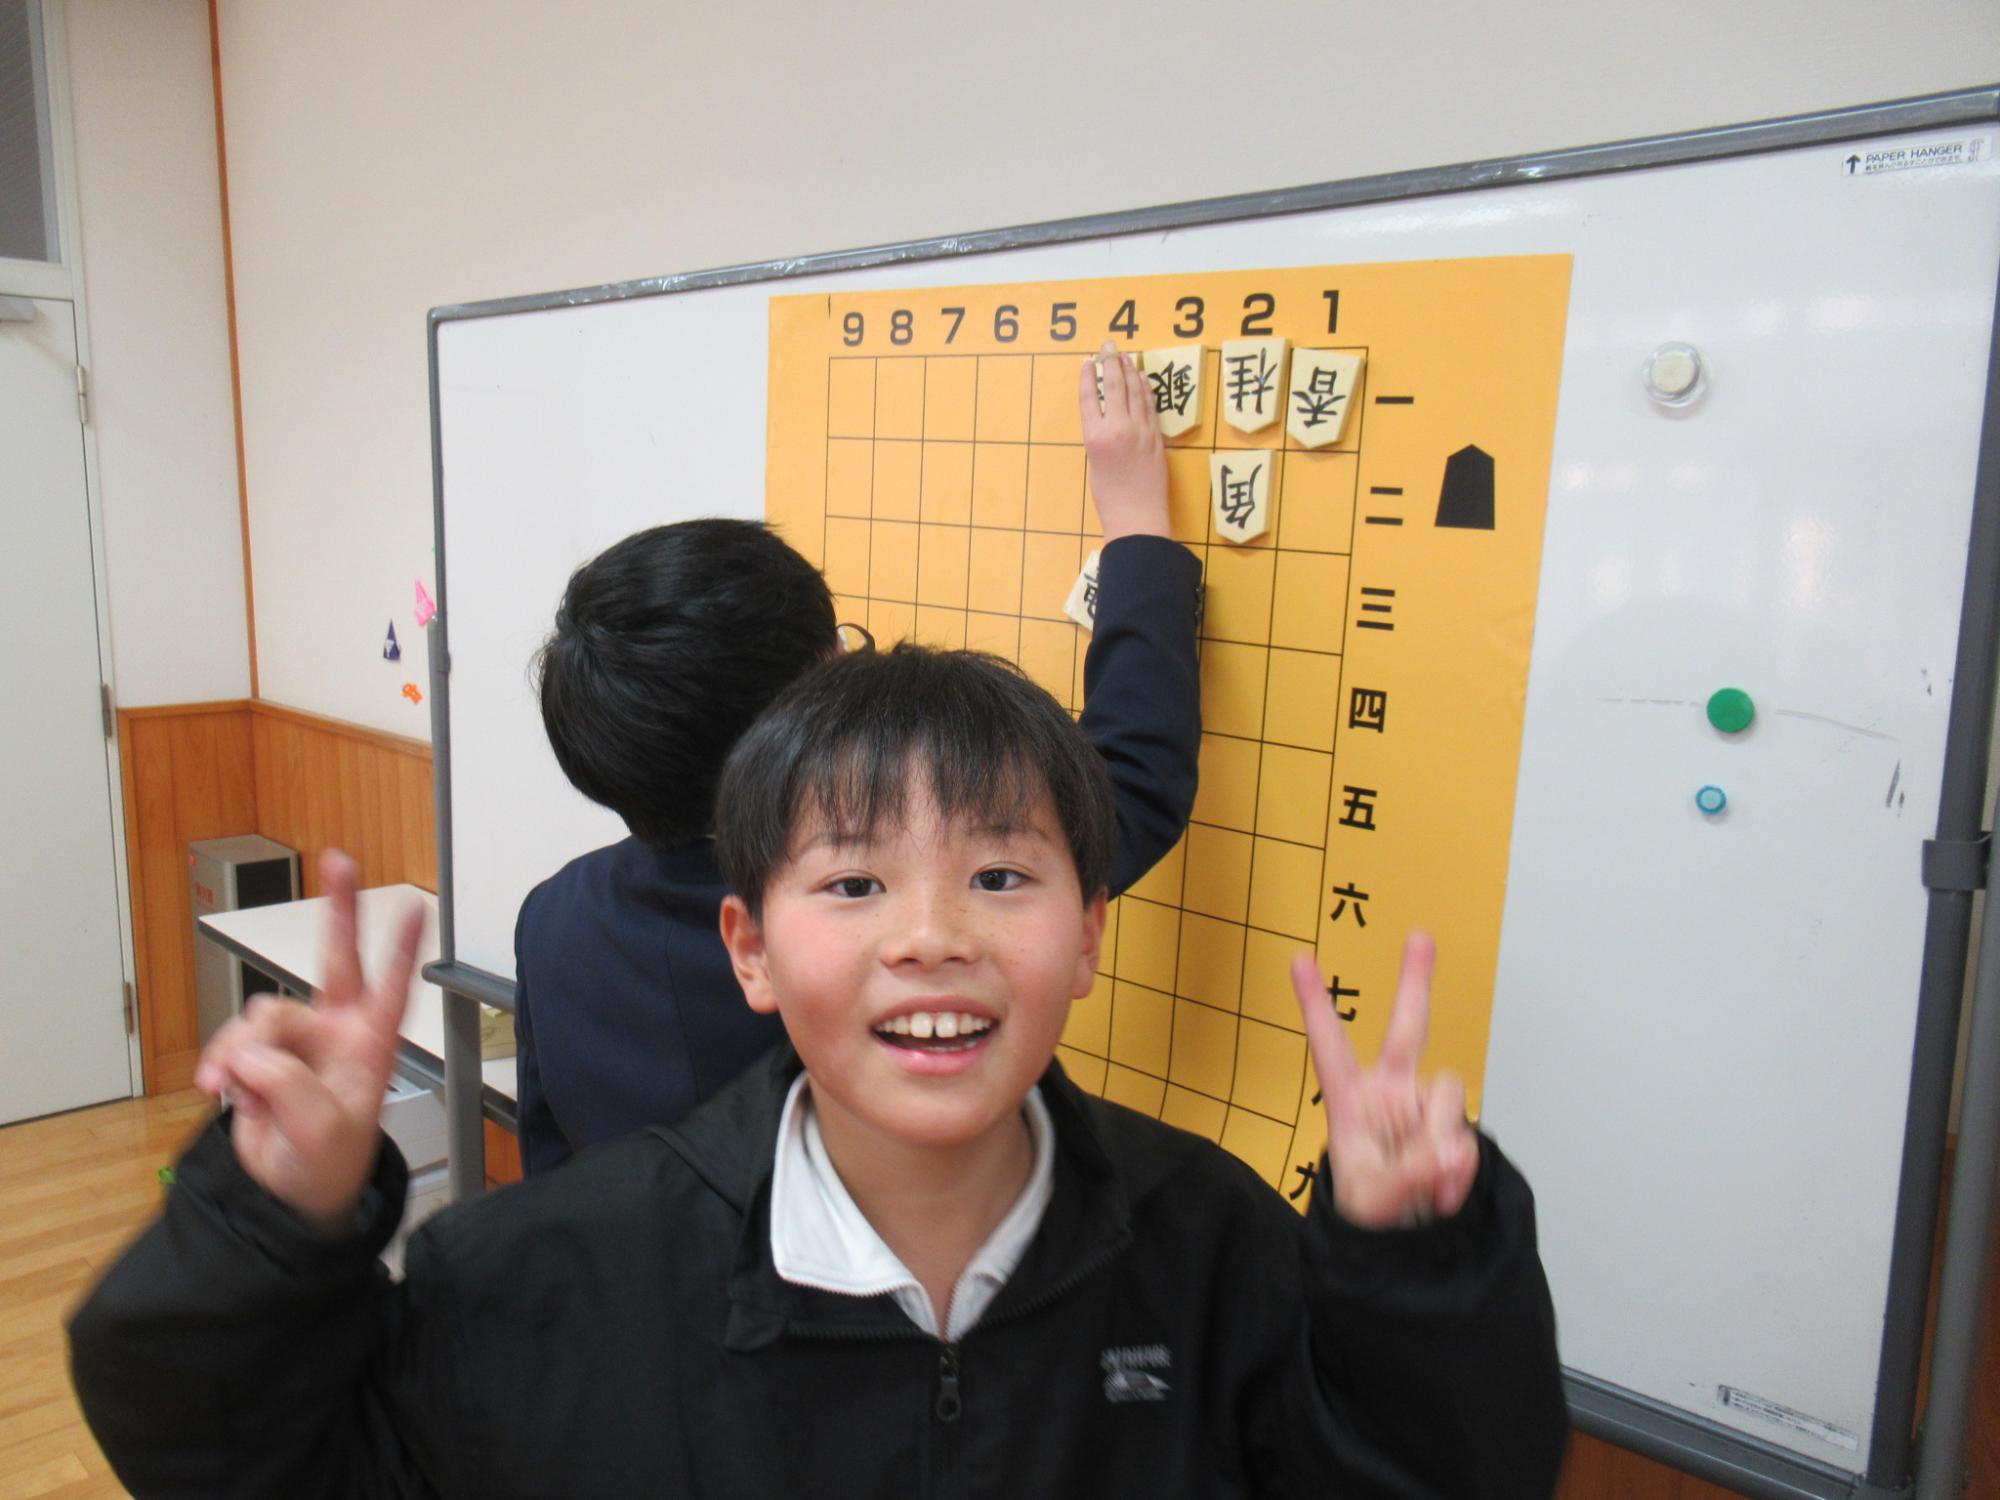 難問の詰将棋を無事解くことができた参加者が正面を向いて喜んでいる写真